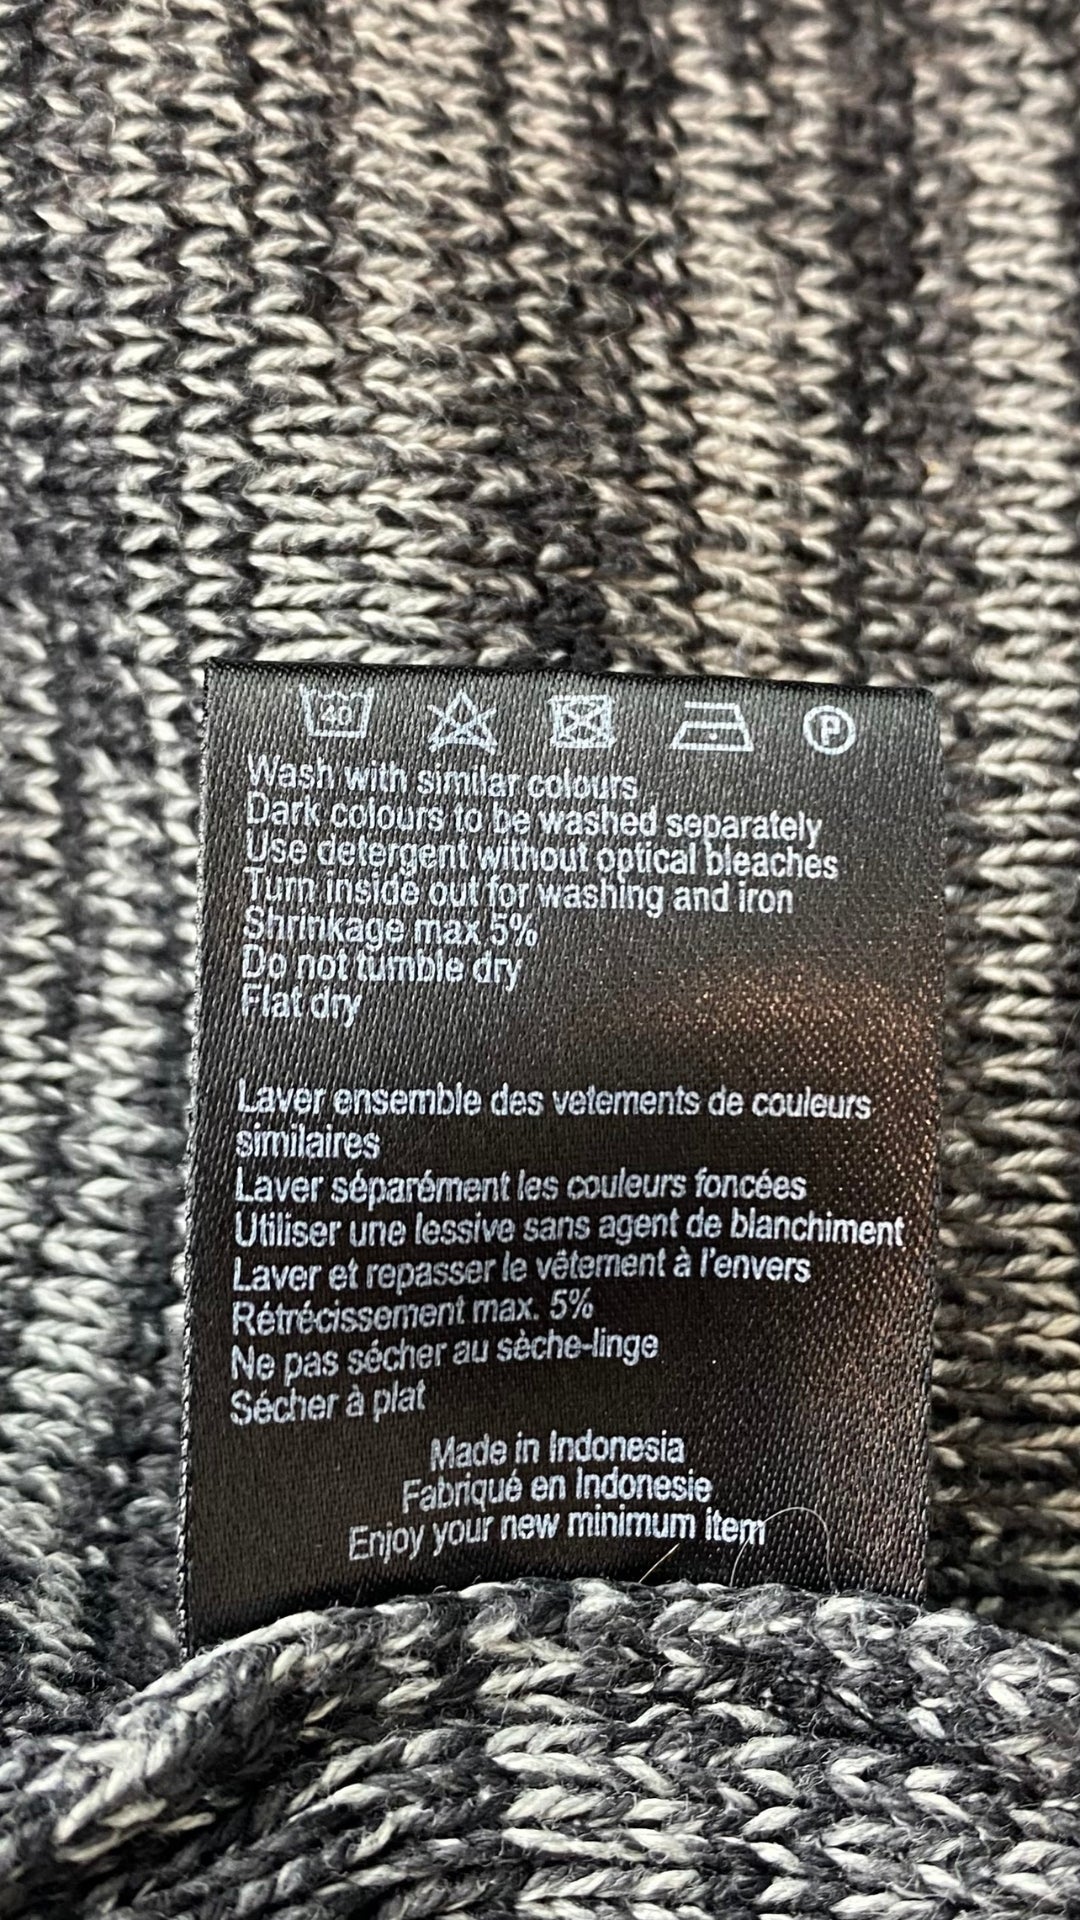 Chandail tricot col rond chiné Minimum, taille large. Vue de l'étiquette d'entretien.